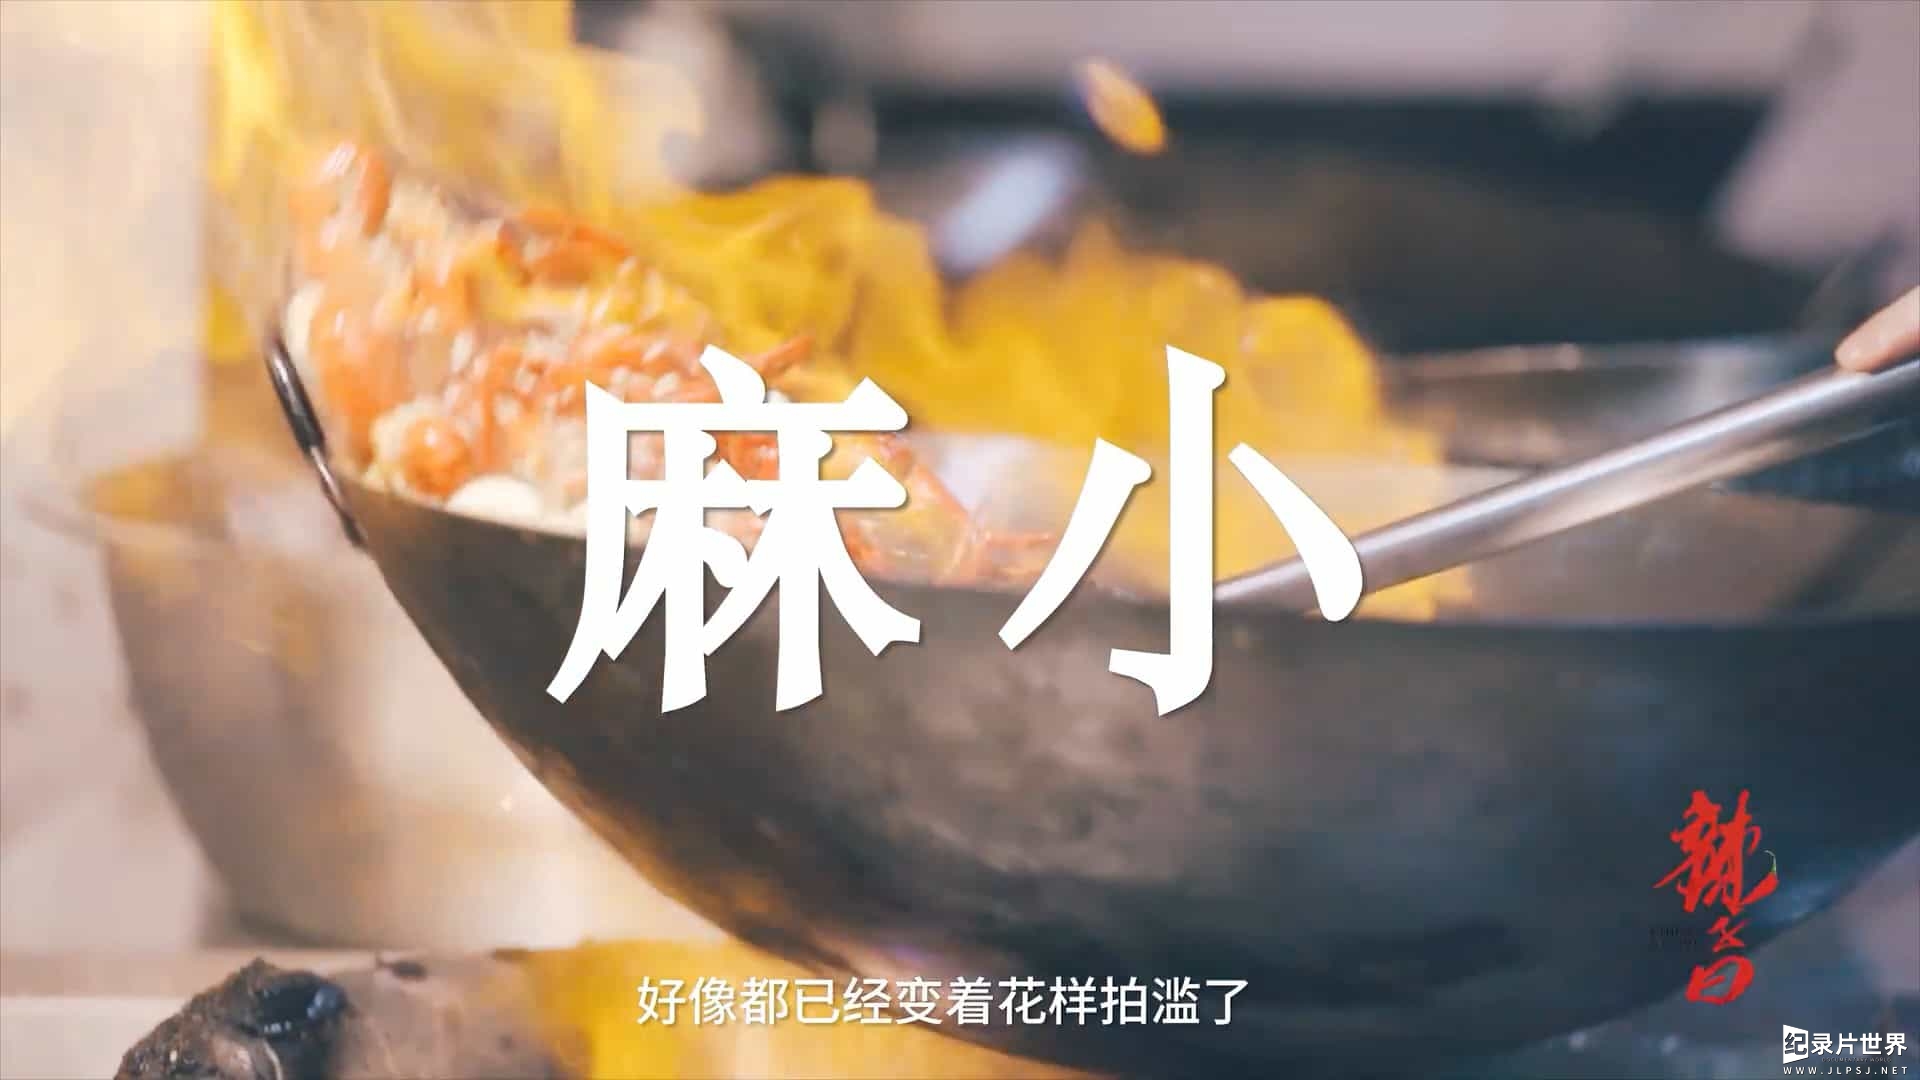 中华辛辣料理纪录片/中国美食系列《辣子曰 Chilies Saying 2020》第1-2季全14集